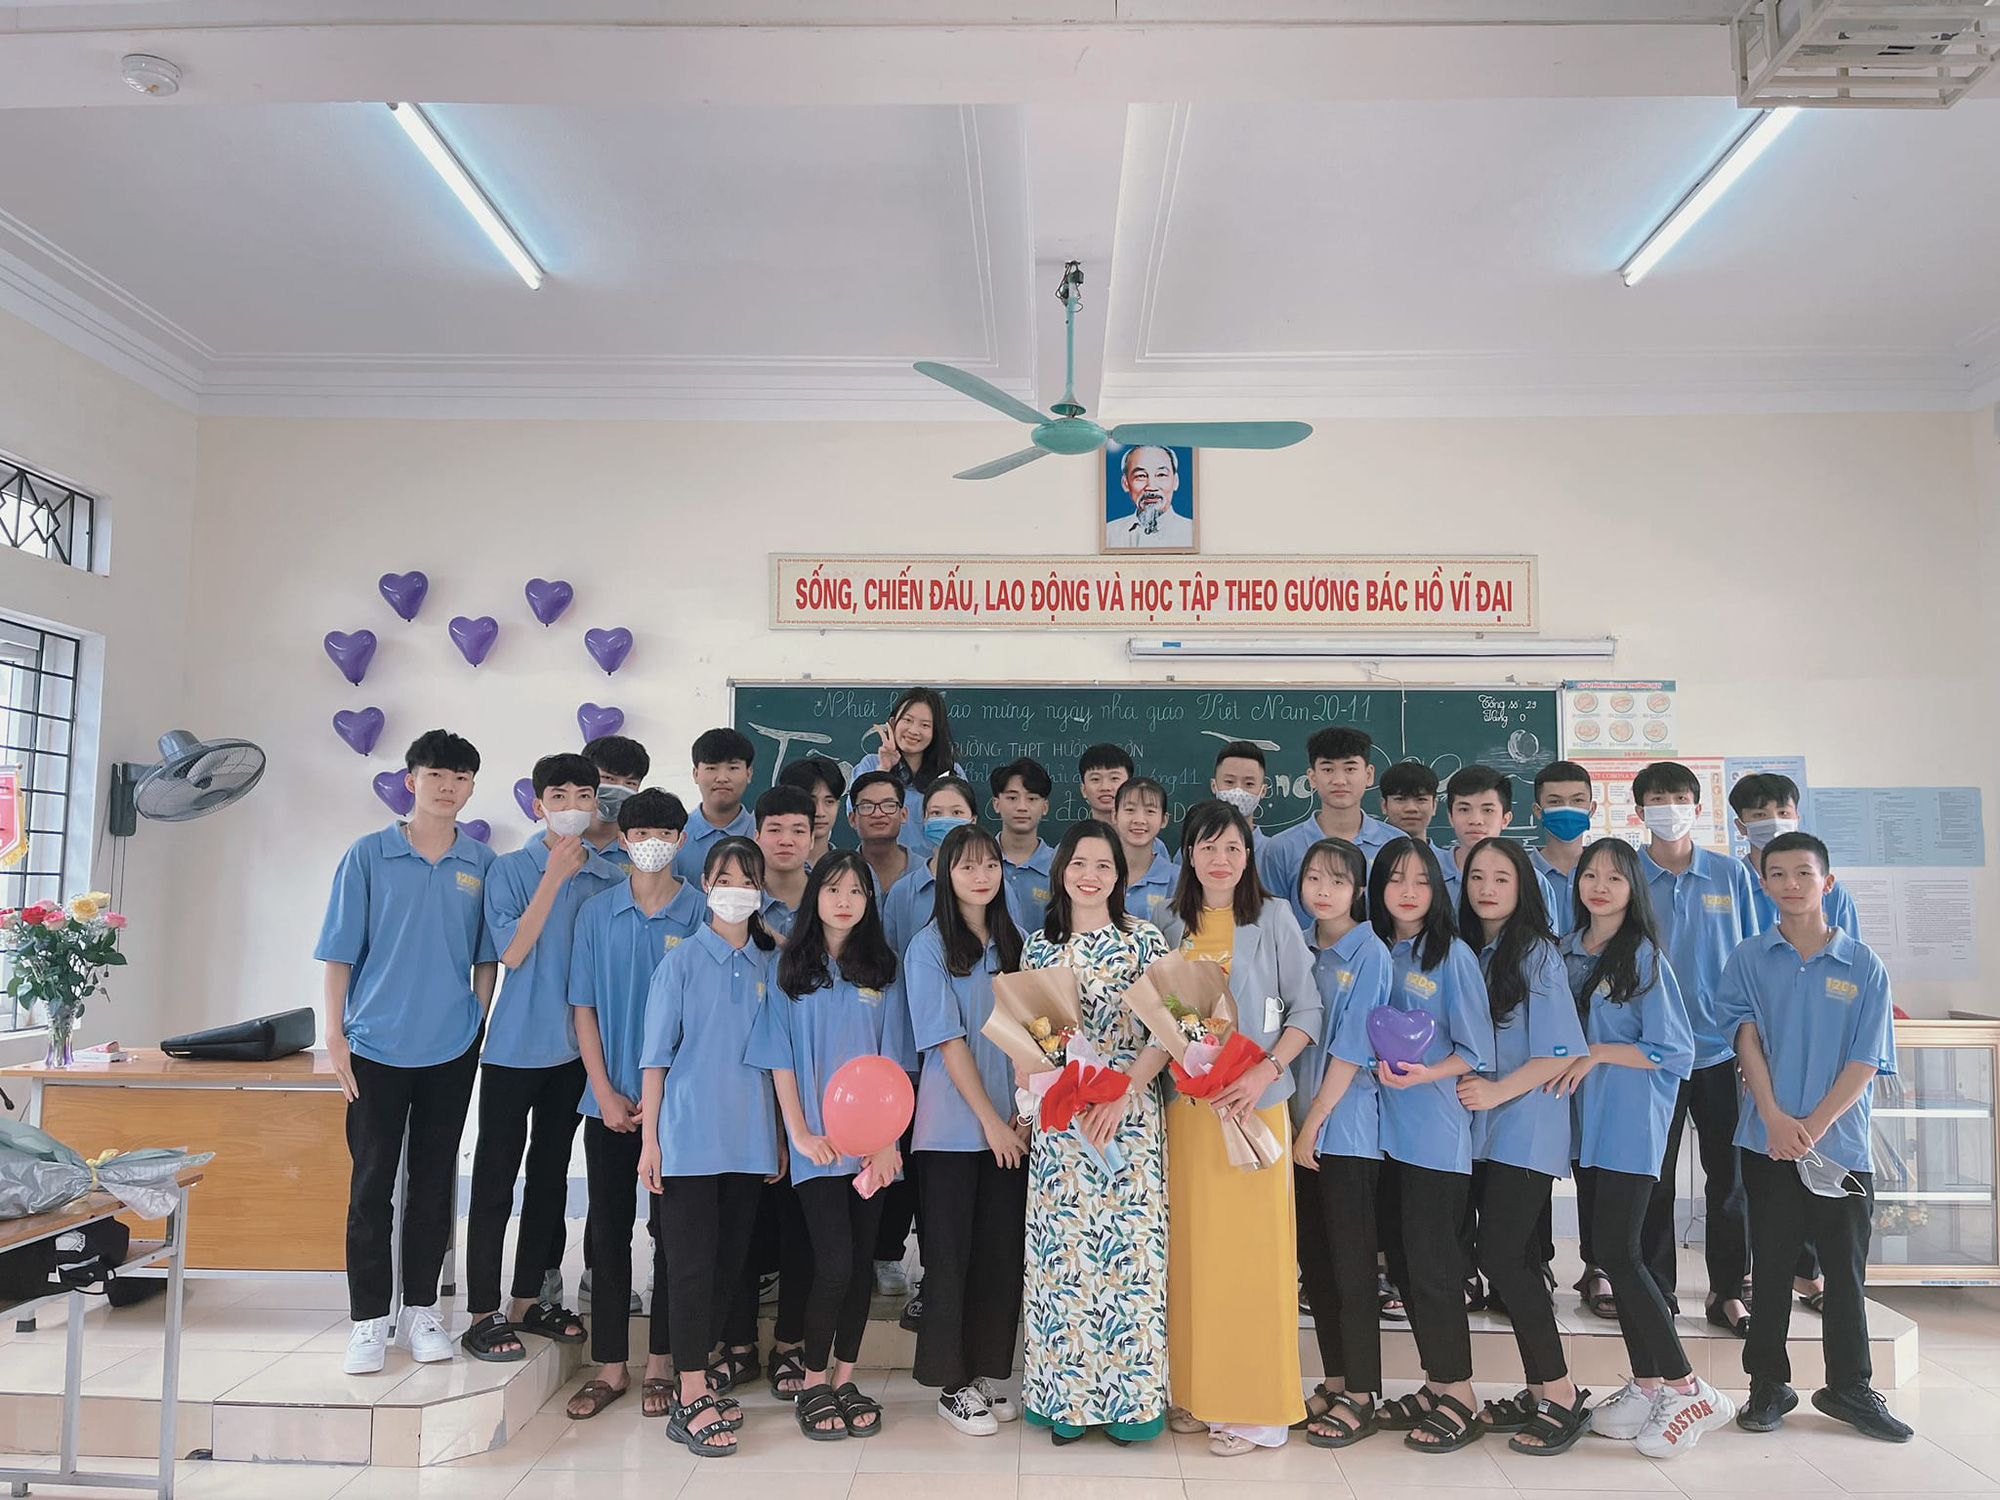 Xúc động những lời yêu thương, tri ân gửi đến thầy cô giáo nhân ngày Nhà giáo Việt Nam 20/11 - Ảnh 2.